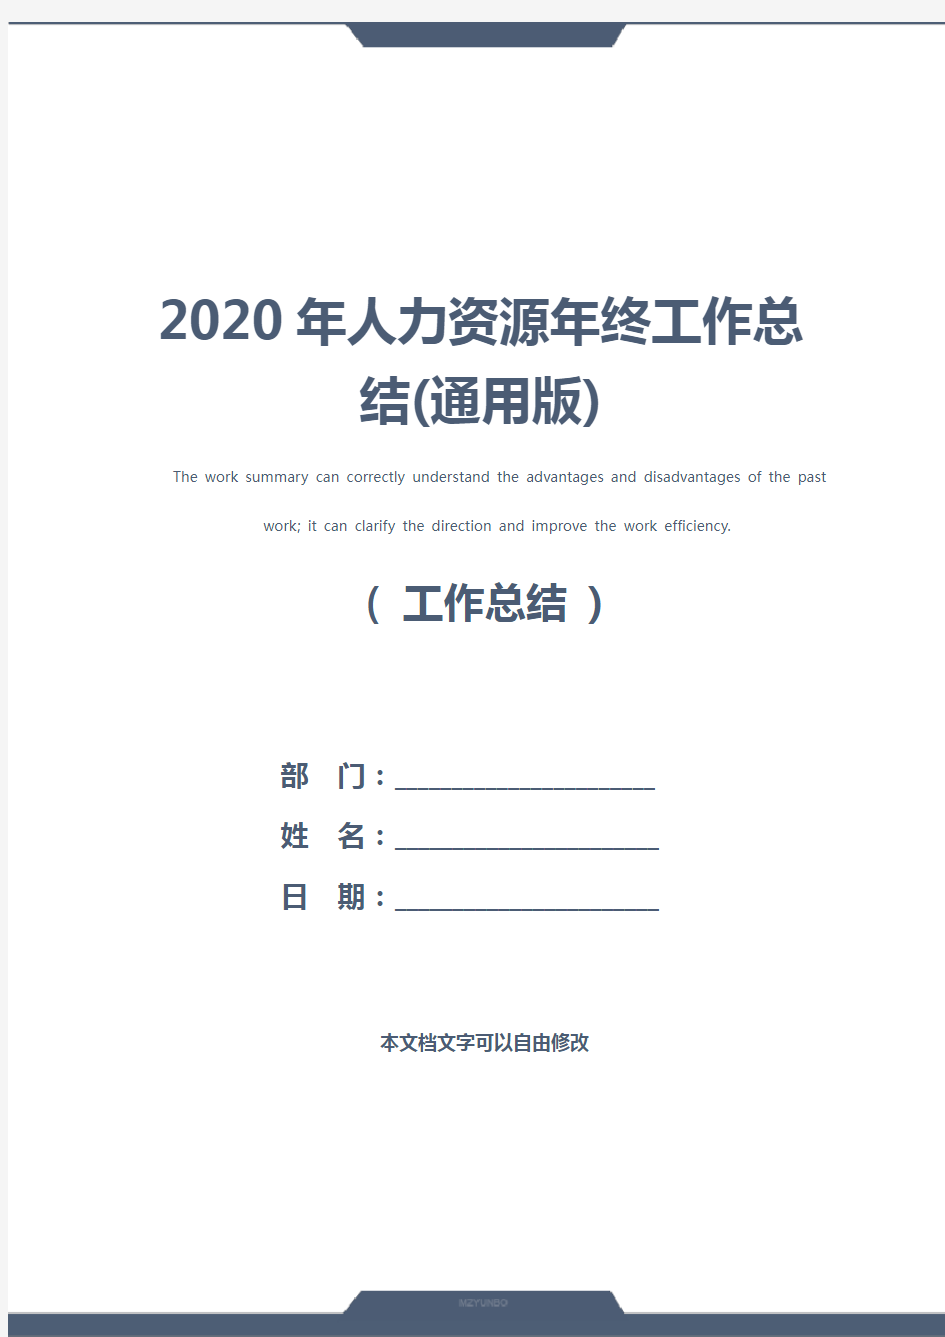 2020年人力资源年终工作总结(通用版)